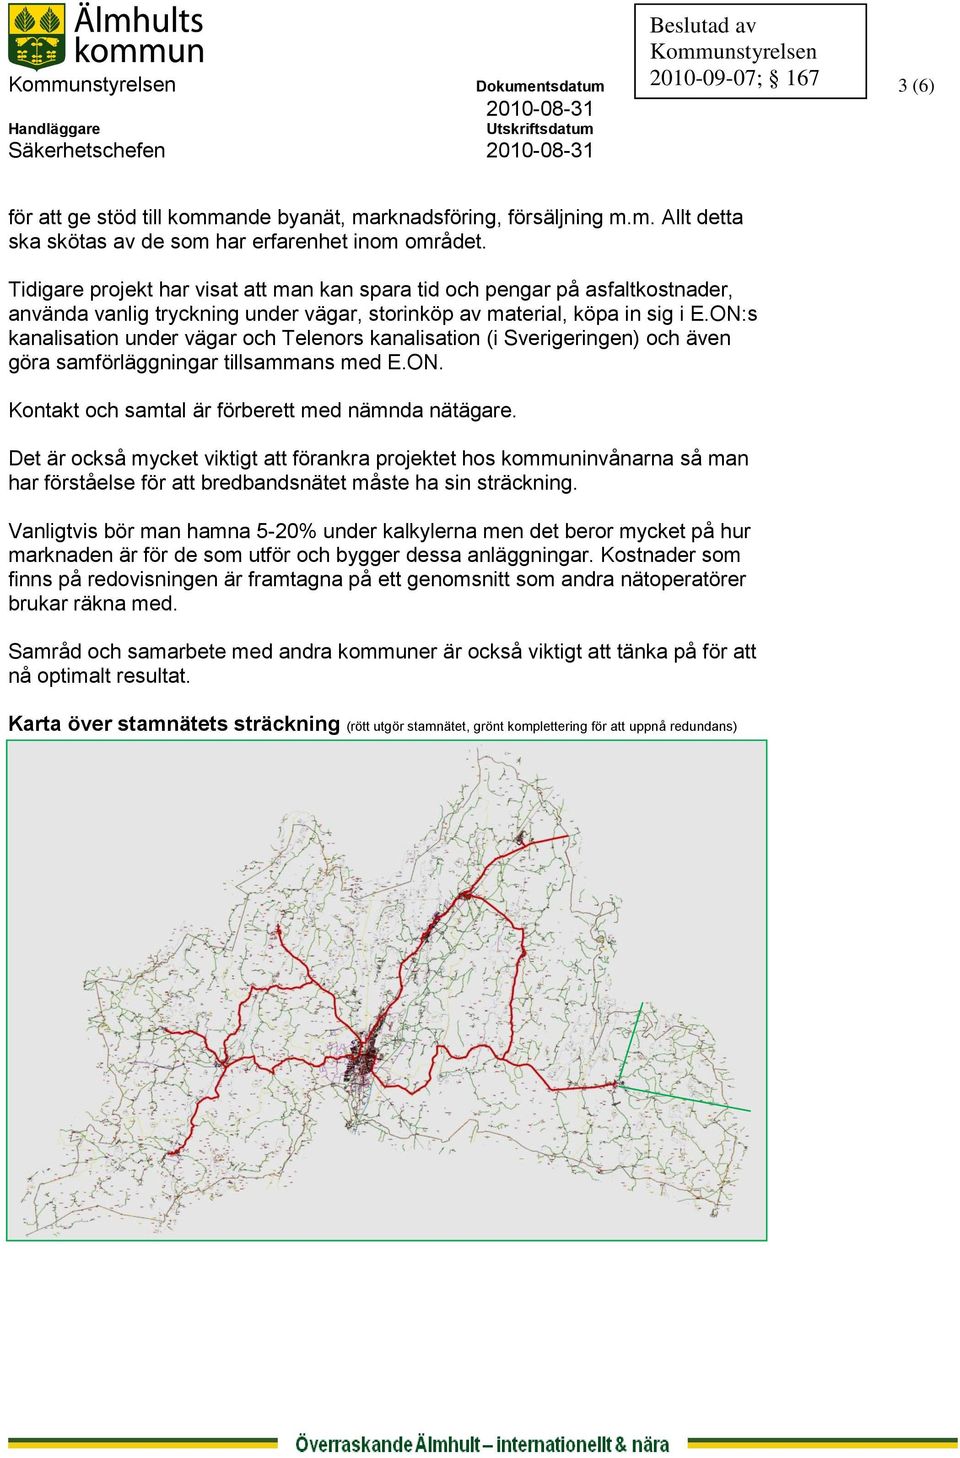 ON:s kanalisation under vägar och Telenors kanalisation (i Sverigeringen) och även göra samförläggningar tillsammans med E.ON. Kontakt och samtal är förberett med nämnda nätägare.